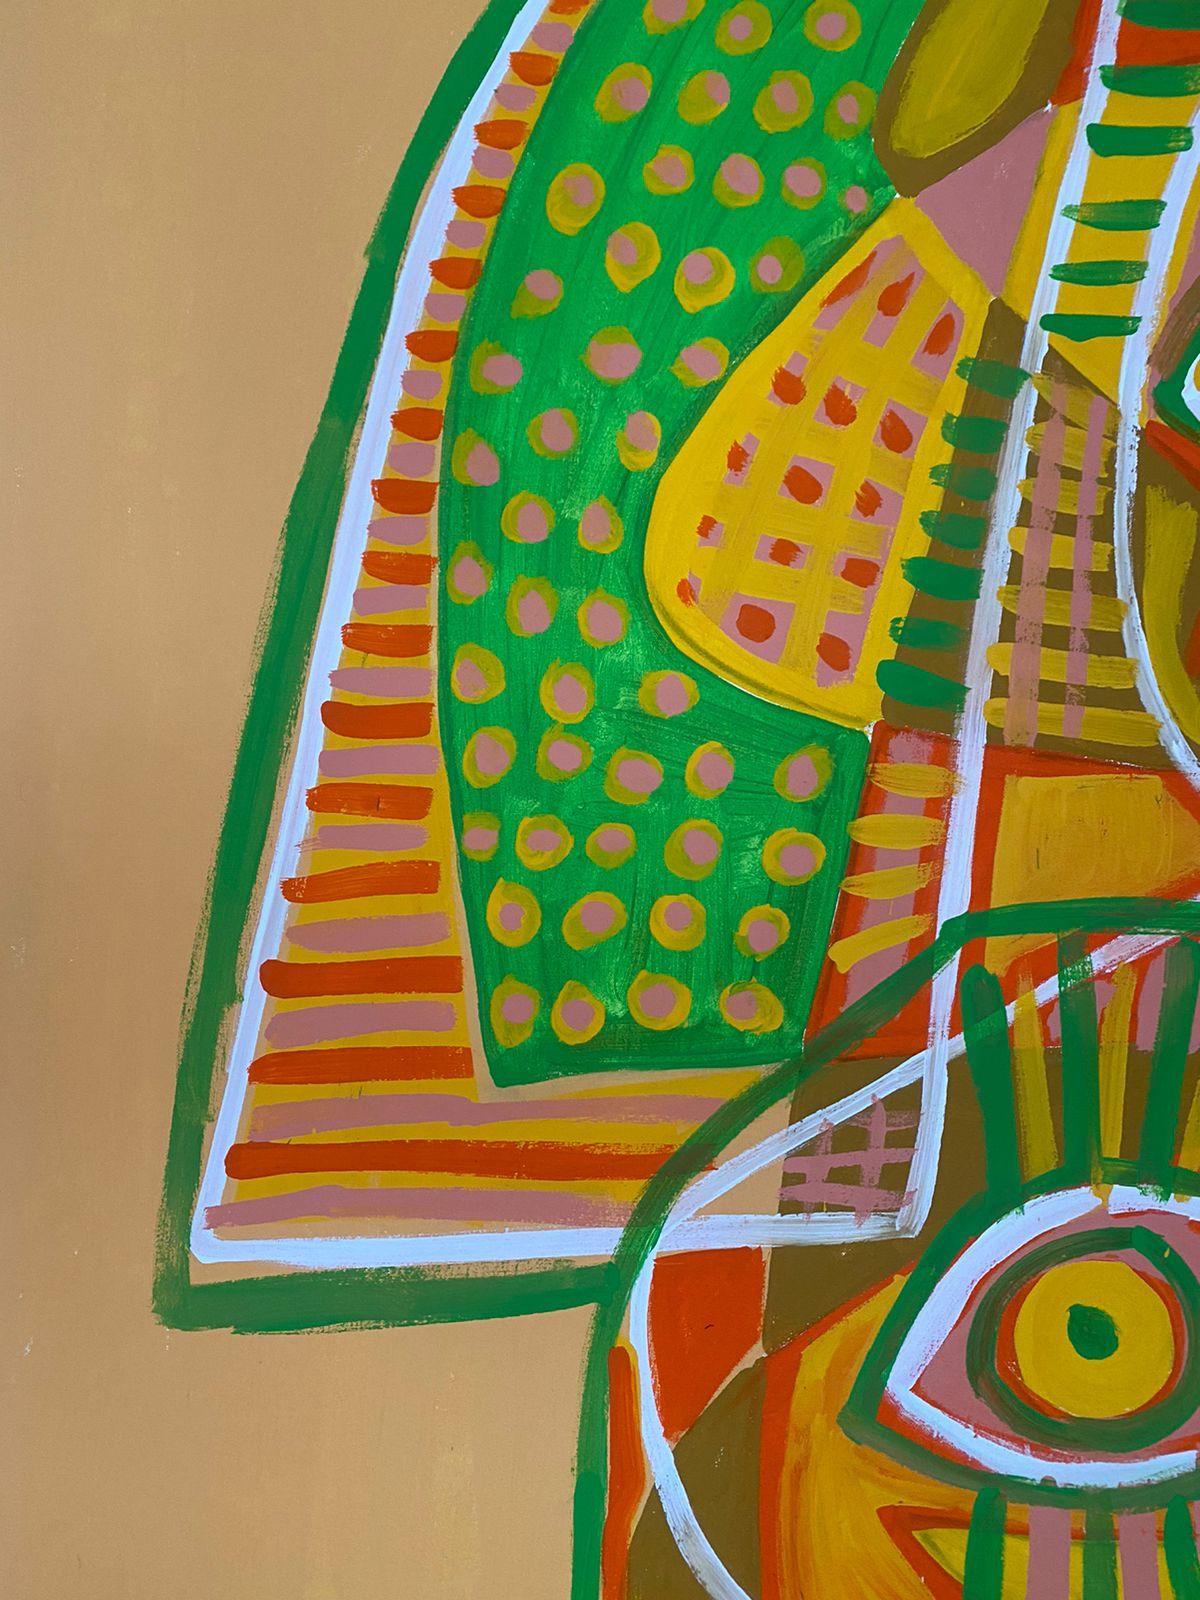 Art contemporain, peinture abstraite
Acrylique sur toile
190x190cm
Signé 
LIVRAISON GRATUITE ROULÉE DANS UN TUBE 




A propos de l'artiste
Enrique Pichardo (Mexico, 1973) est diplômé de l'Escuela Nacional de Pintura, Escultura y Grabado (ENPEG) 